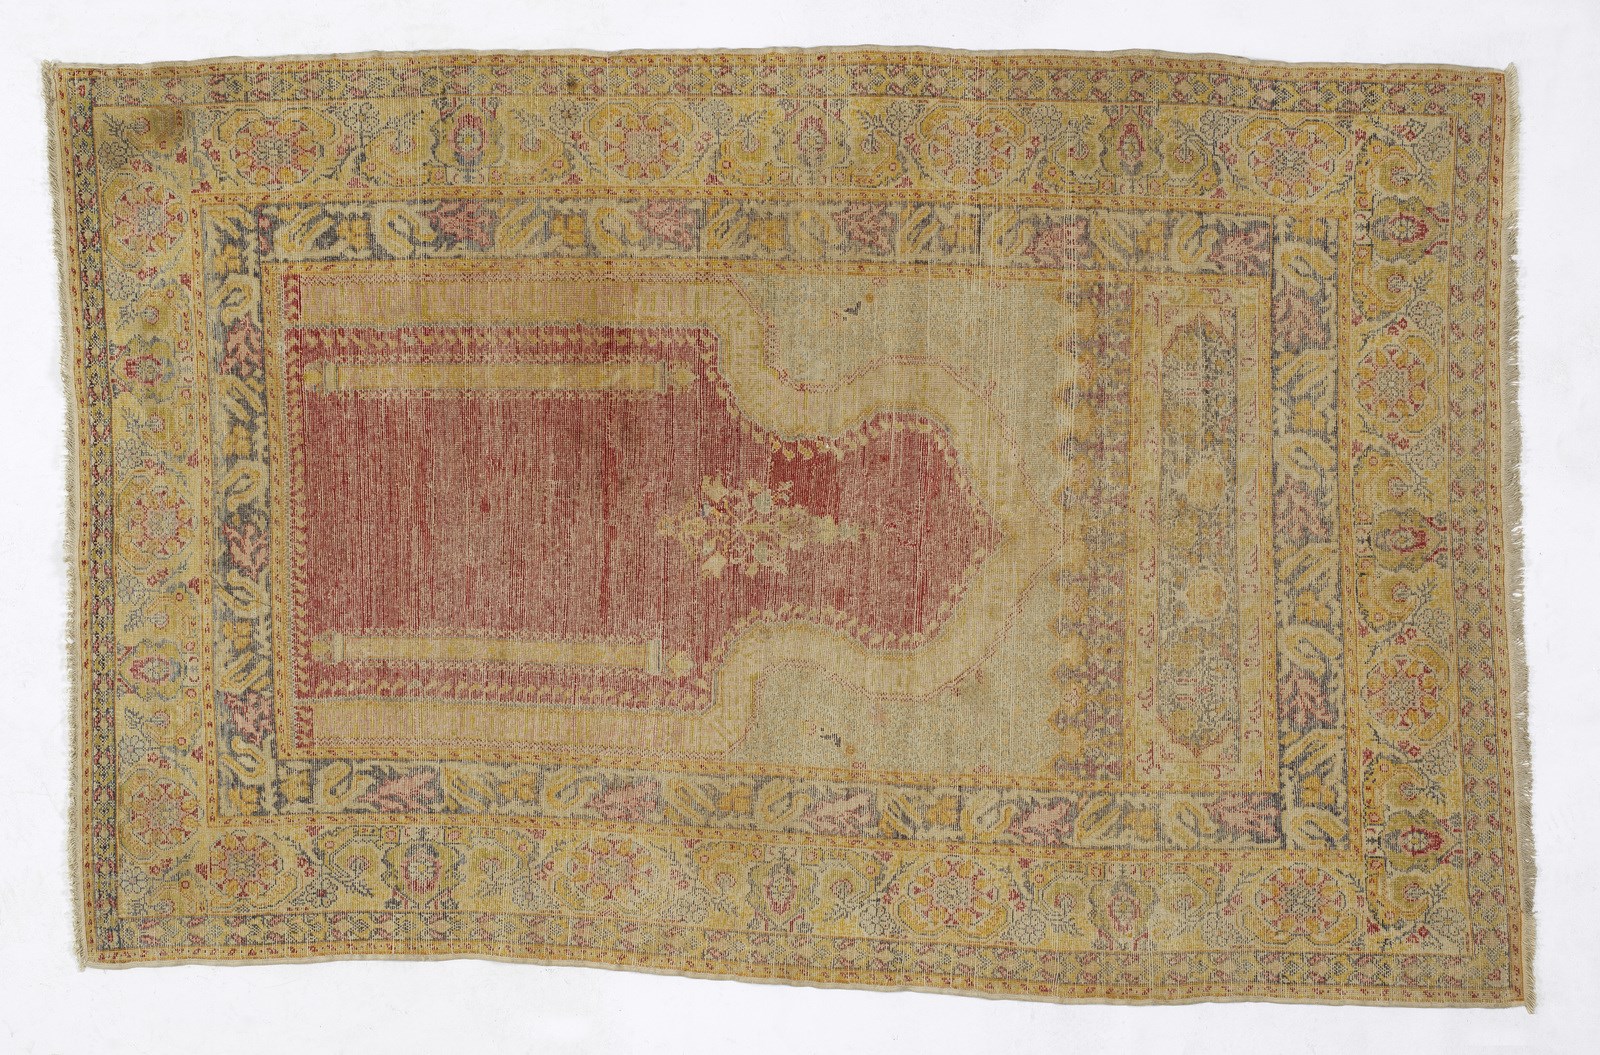 PANDERMAN Panderman carpet, west Turkey, end of the 19th century. - Image 2 of 2